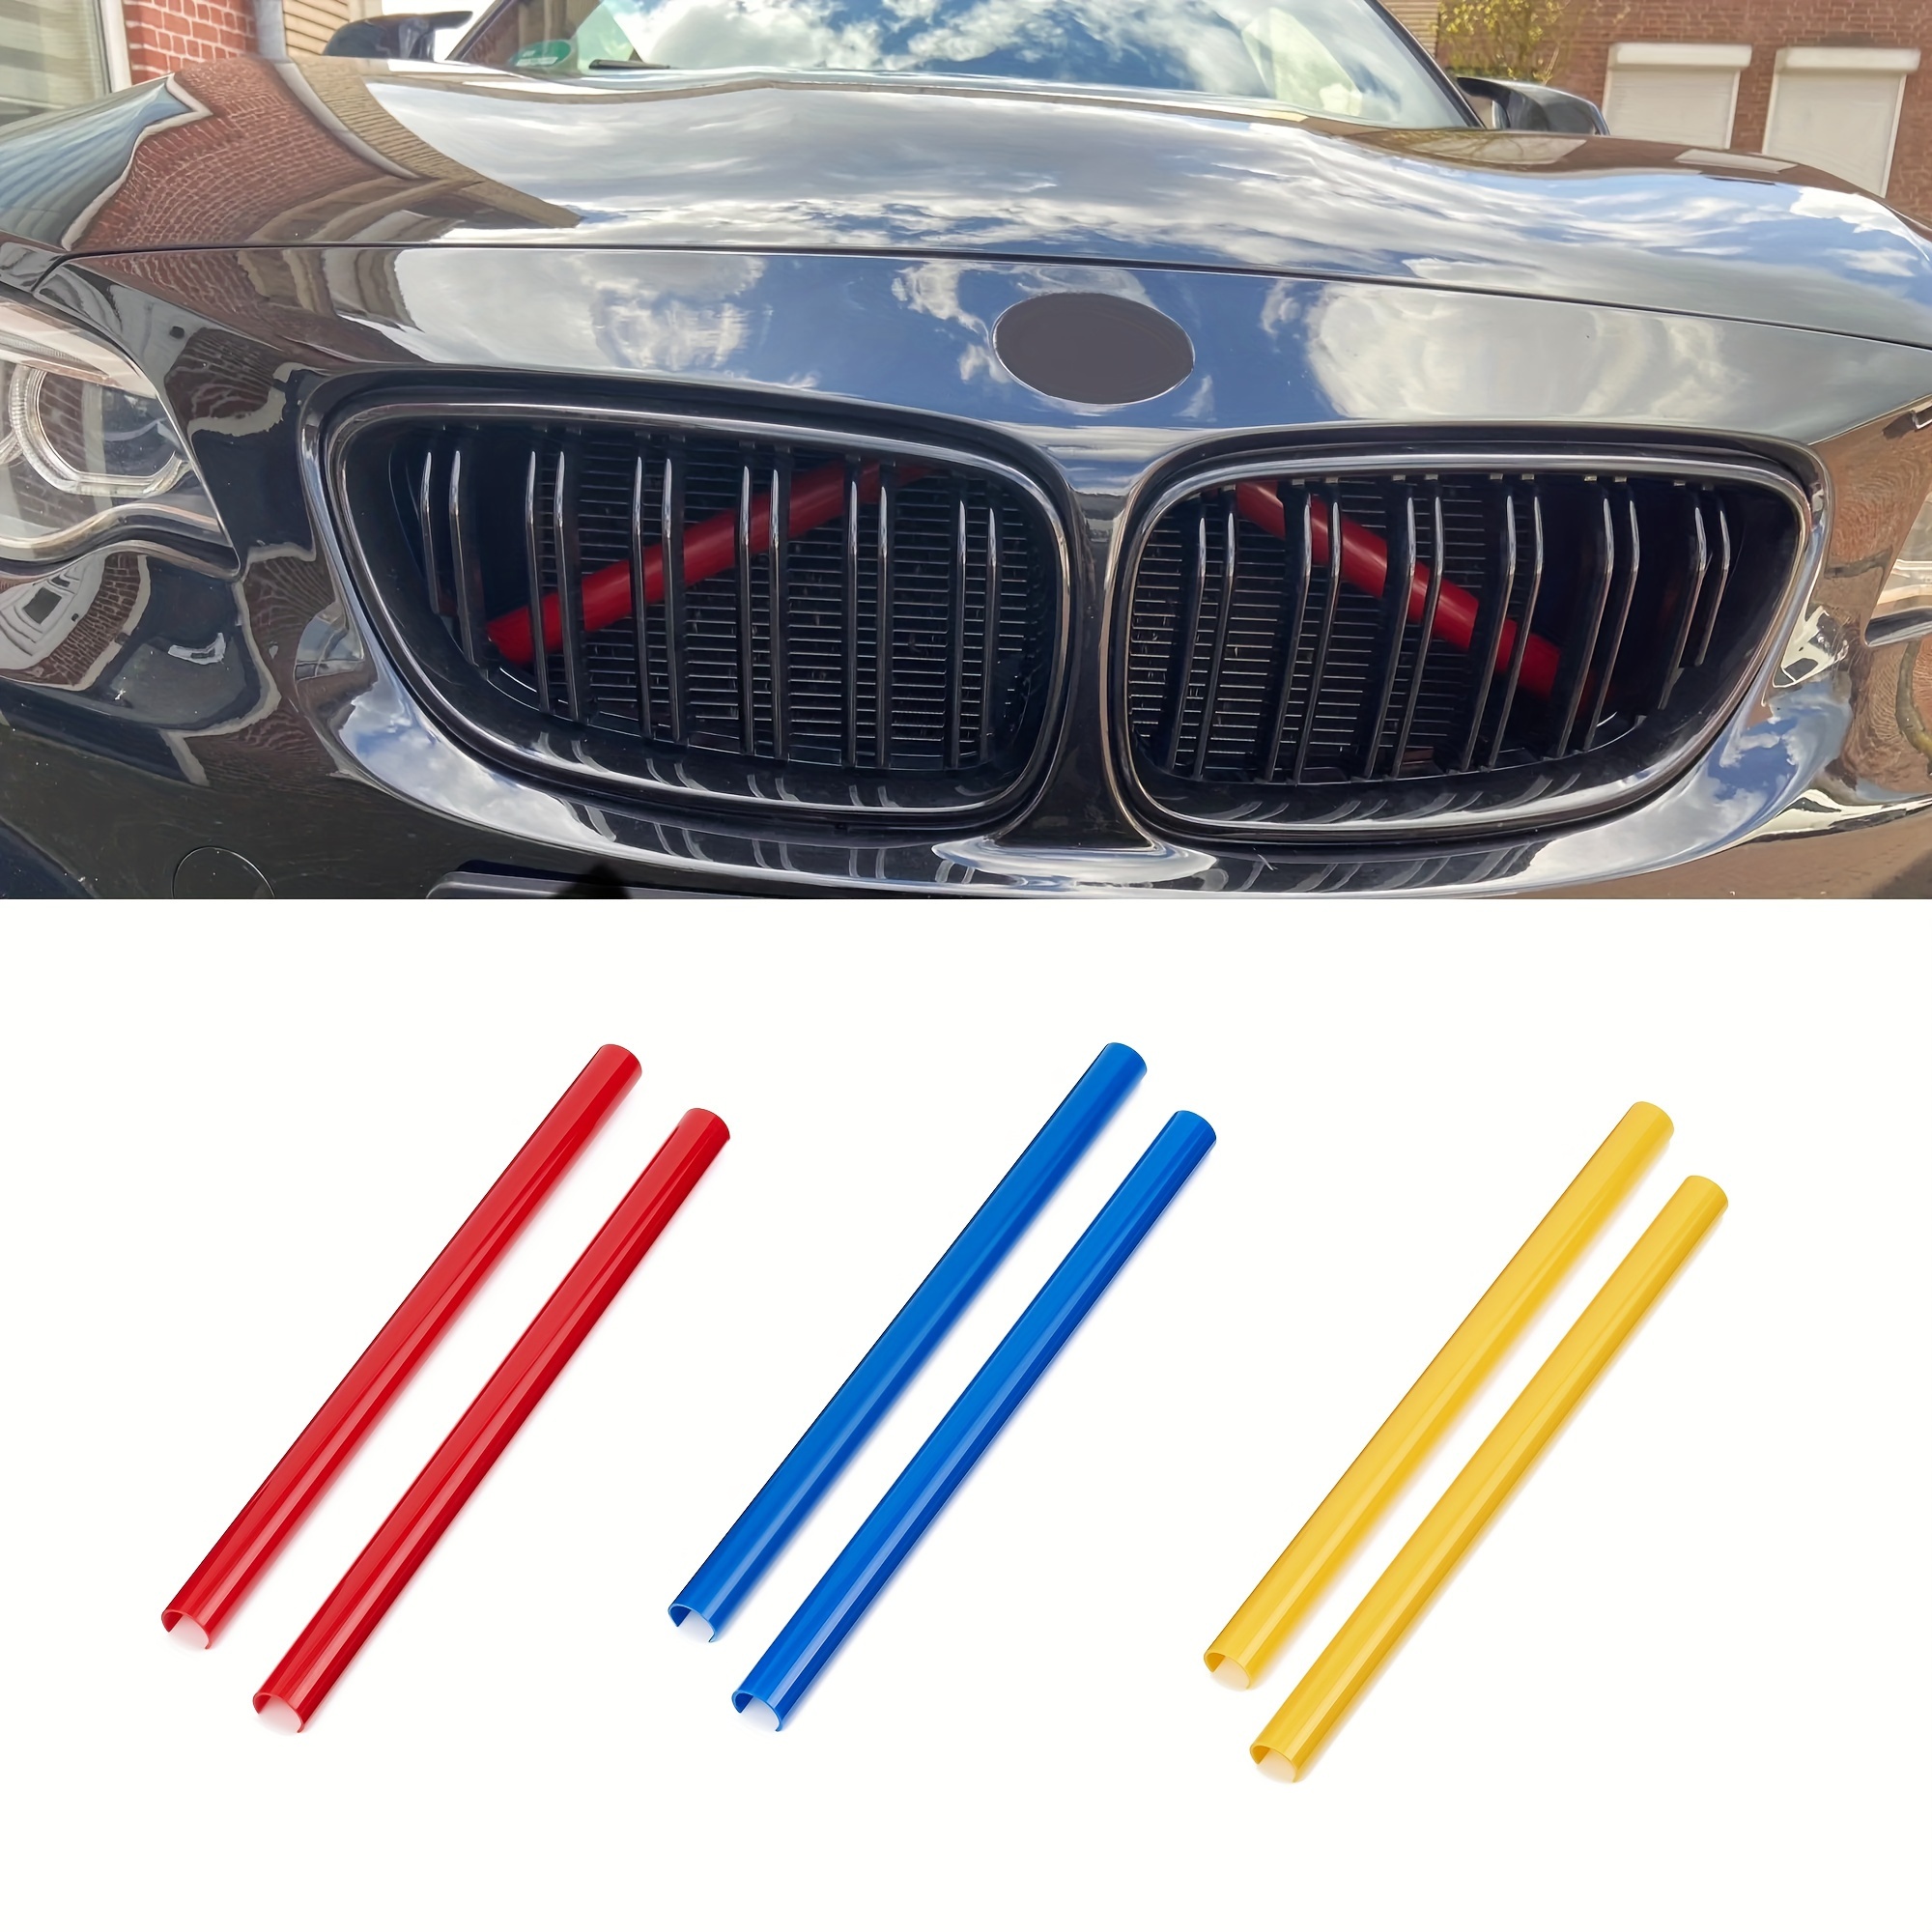 Exclusivos accesorios de lujo para tu coche BMW